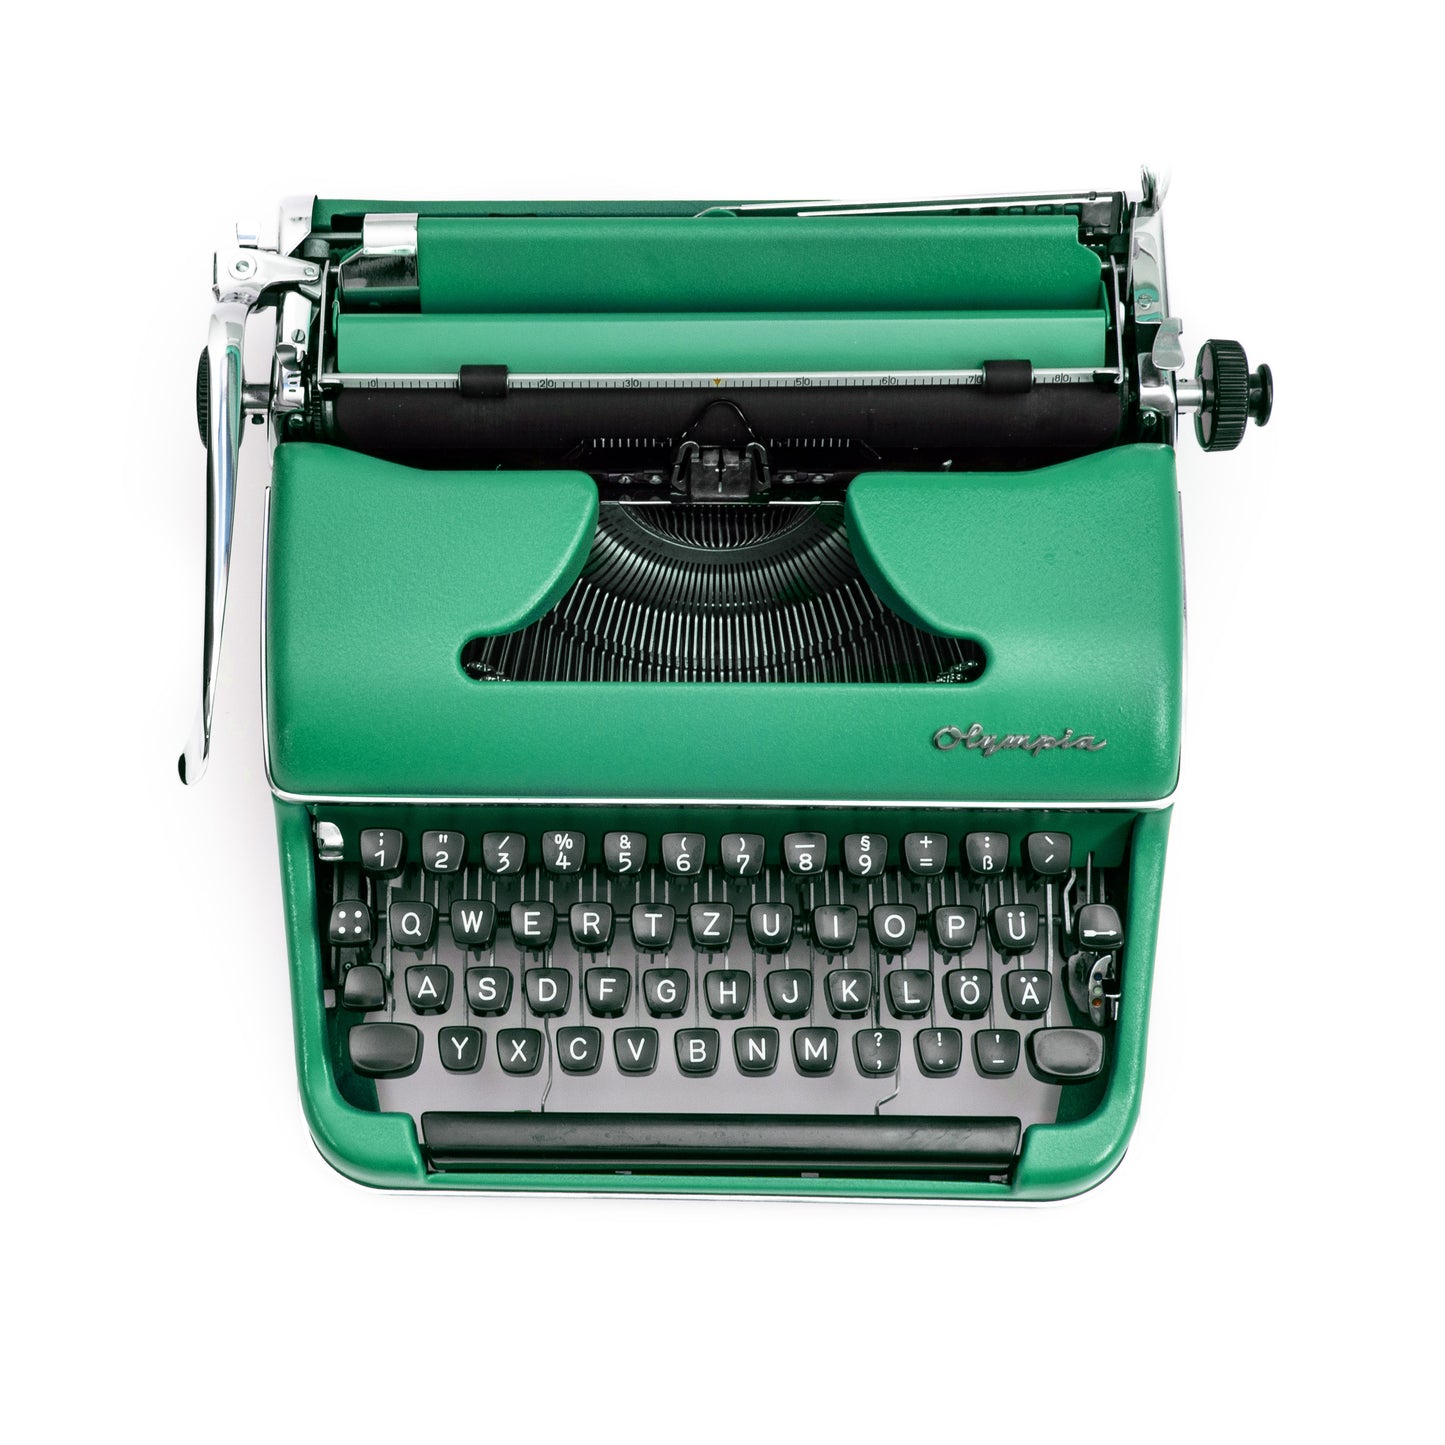 Olympia Schreibmaschine Grün